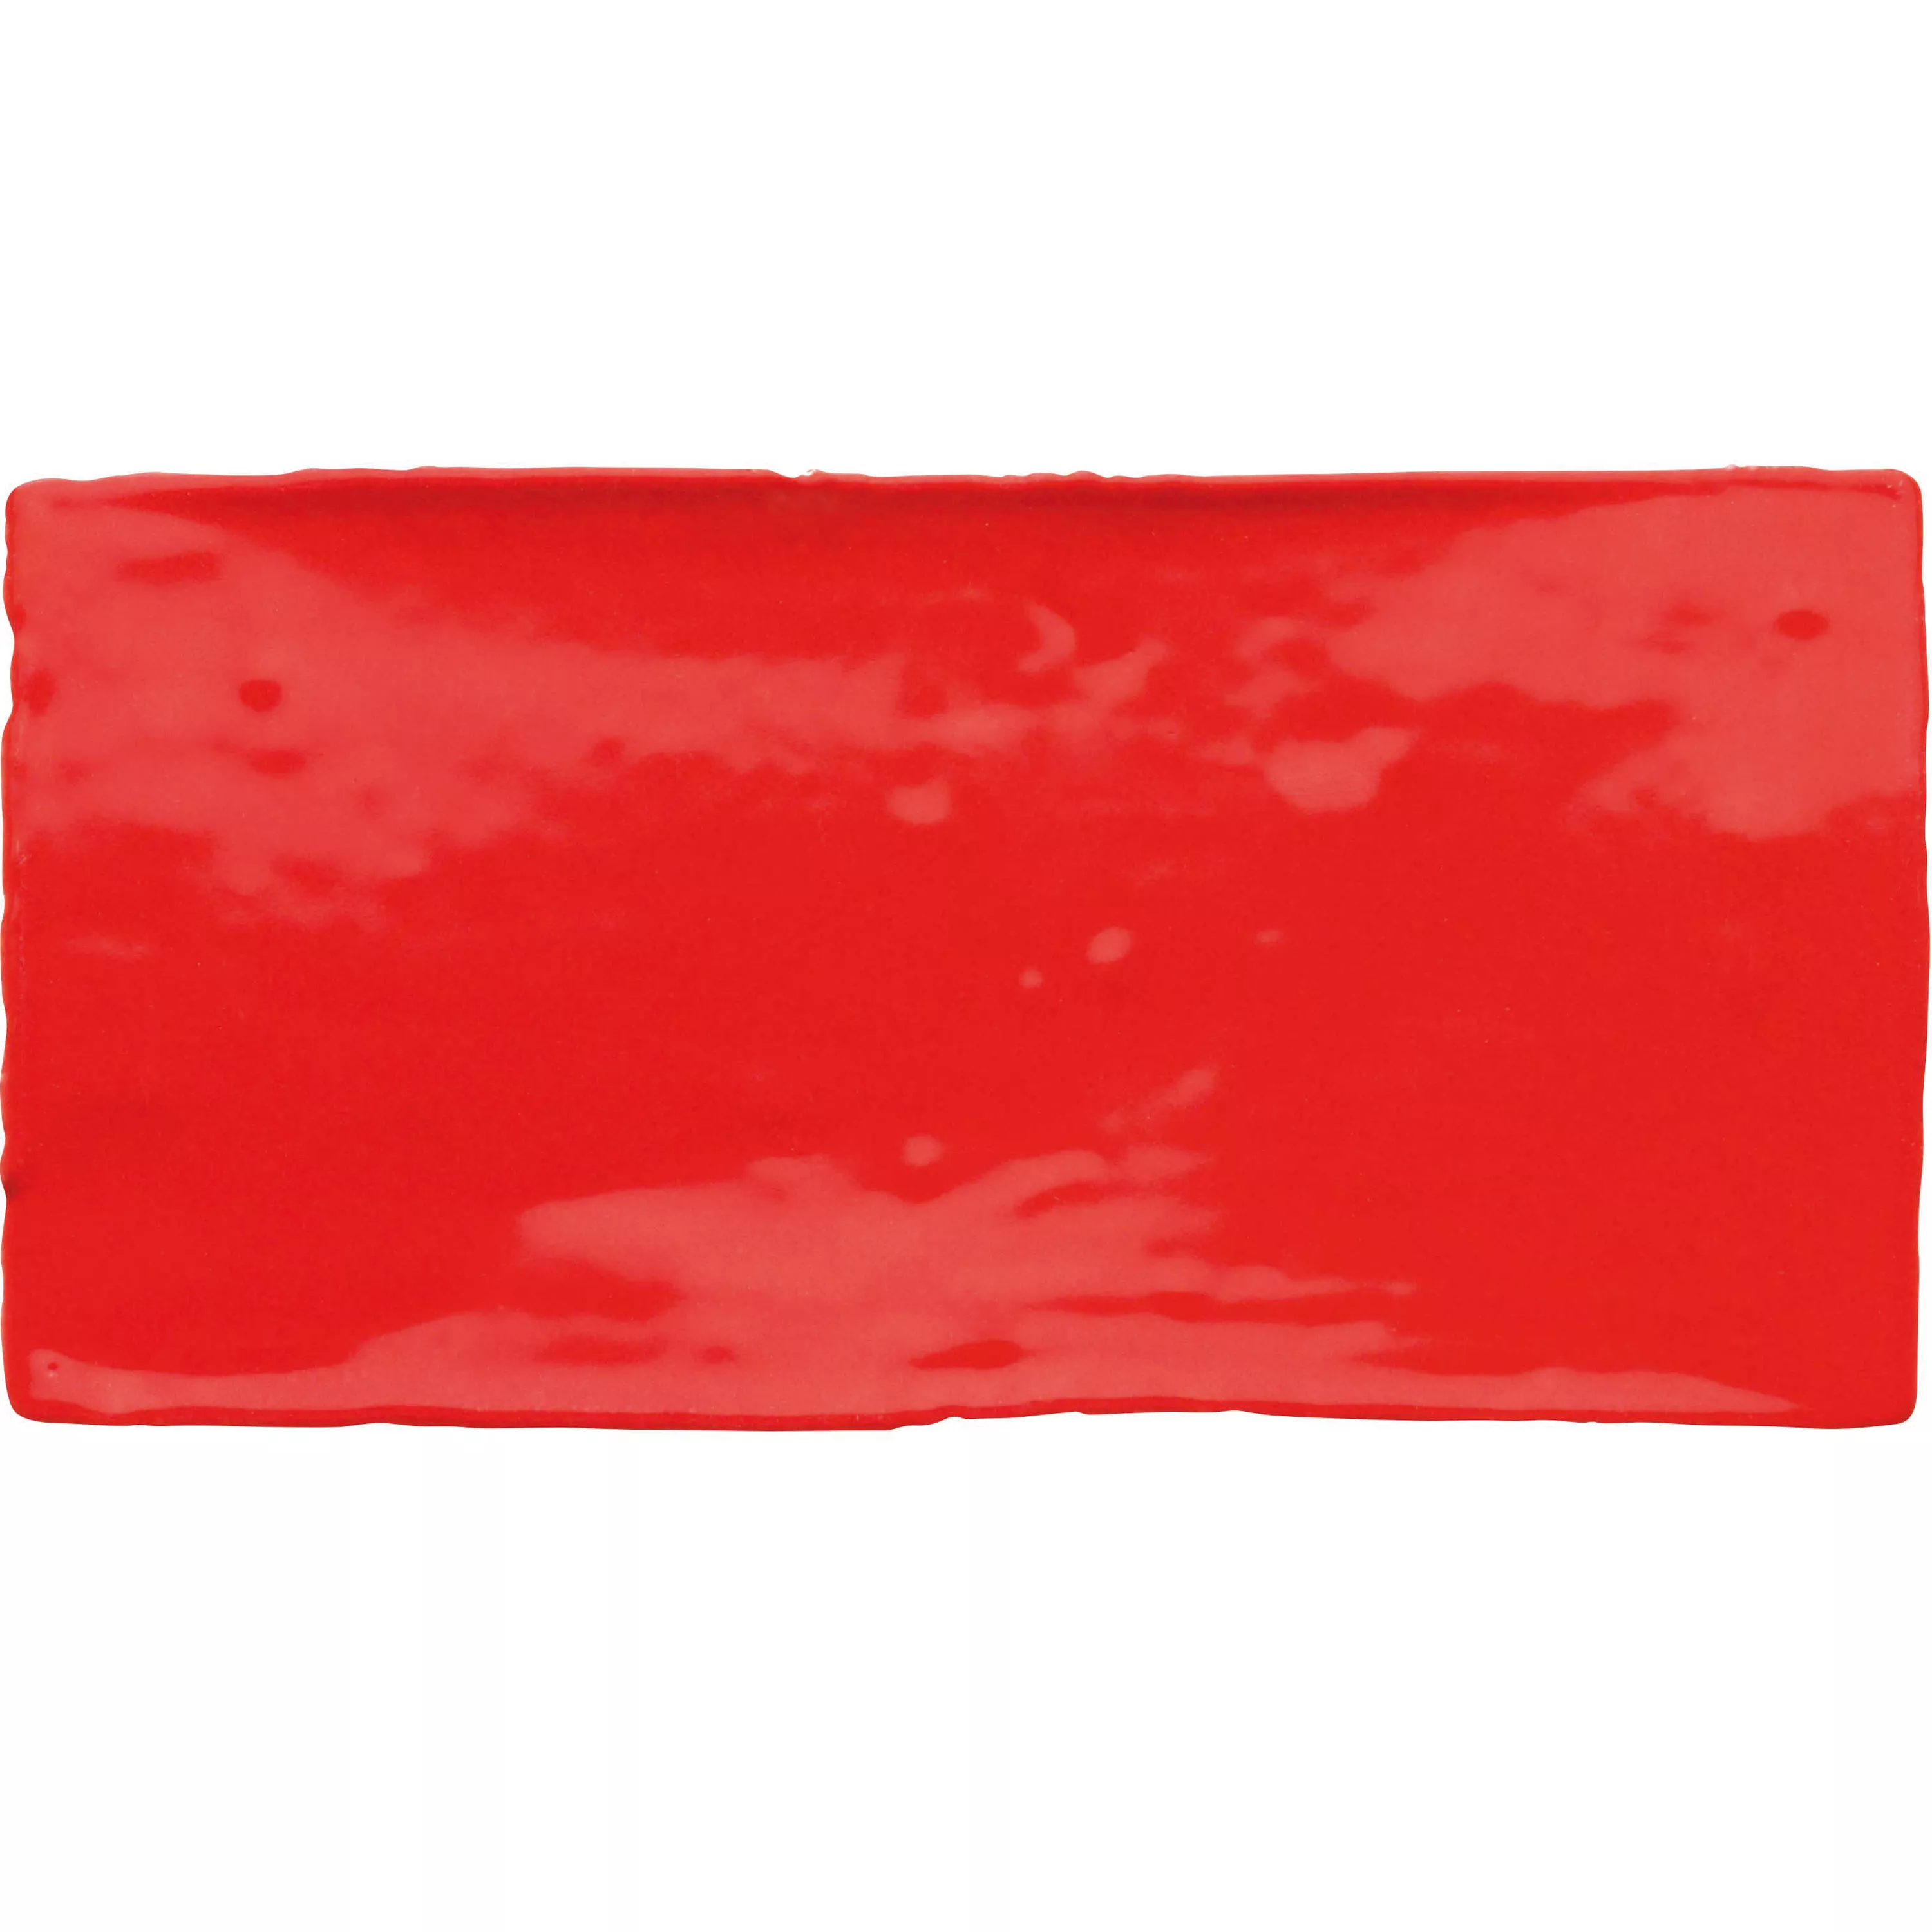 Πλακάκι Tοίχου Algier Xειροποίητο 7,5x15cm Kόκκινο